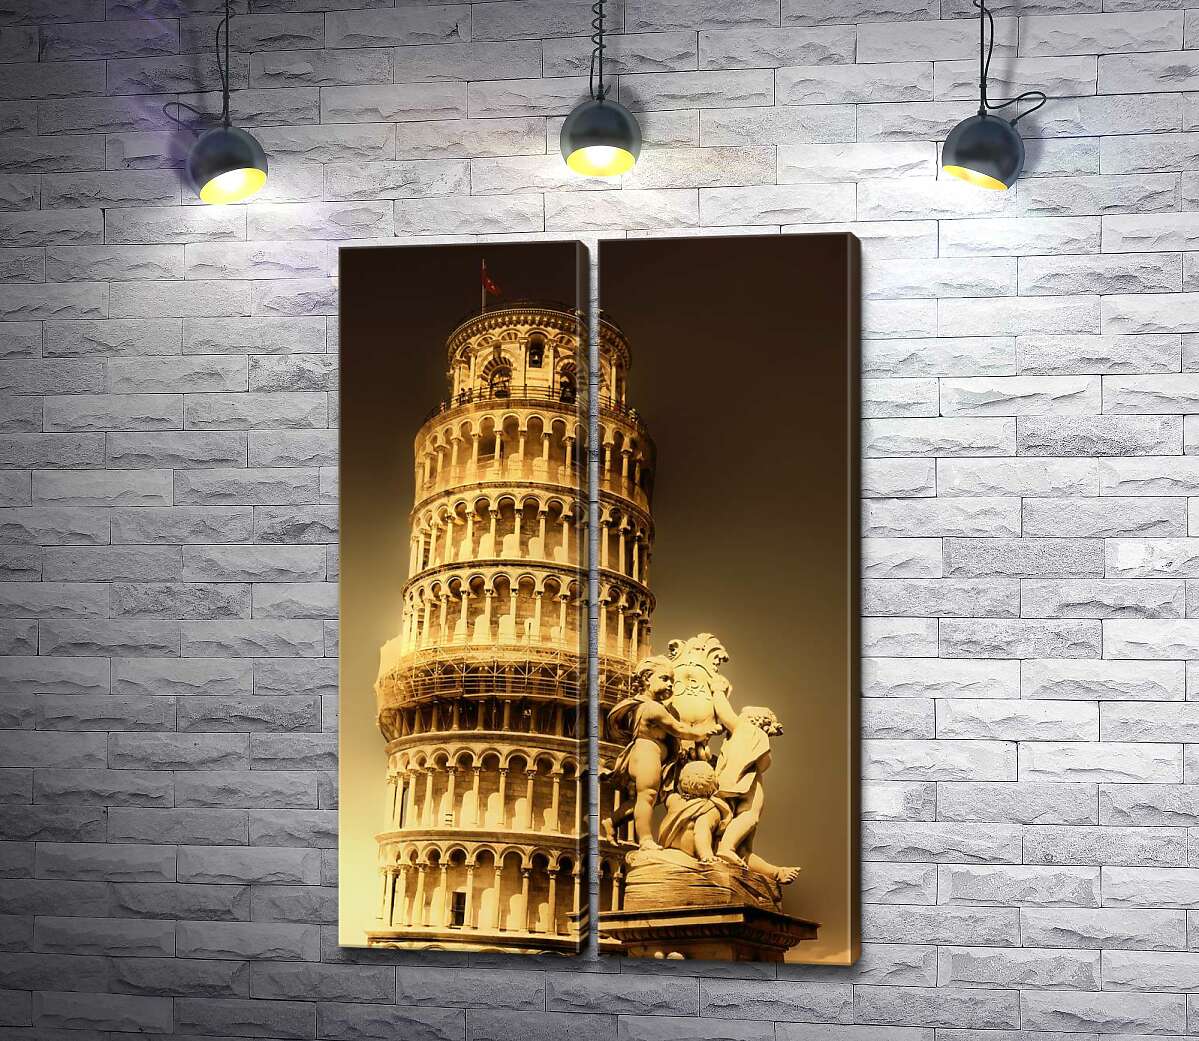 модульна картина Пізанська вежа (Pisa tower) видніється через фонтан Путті (Fontana dei Putti)